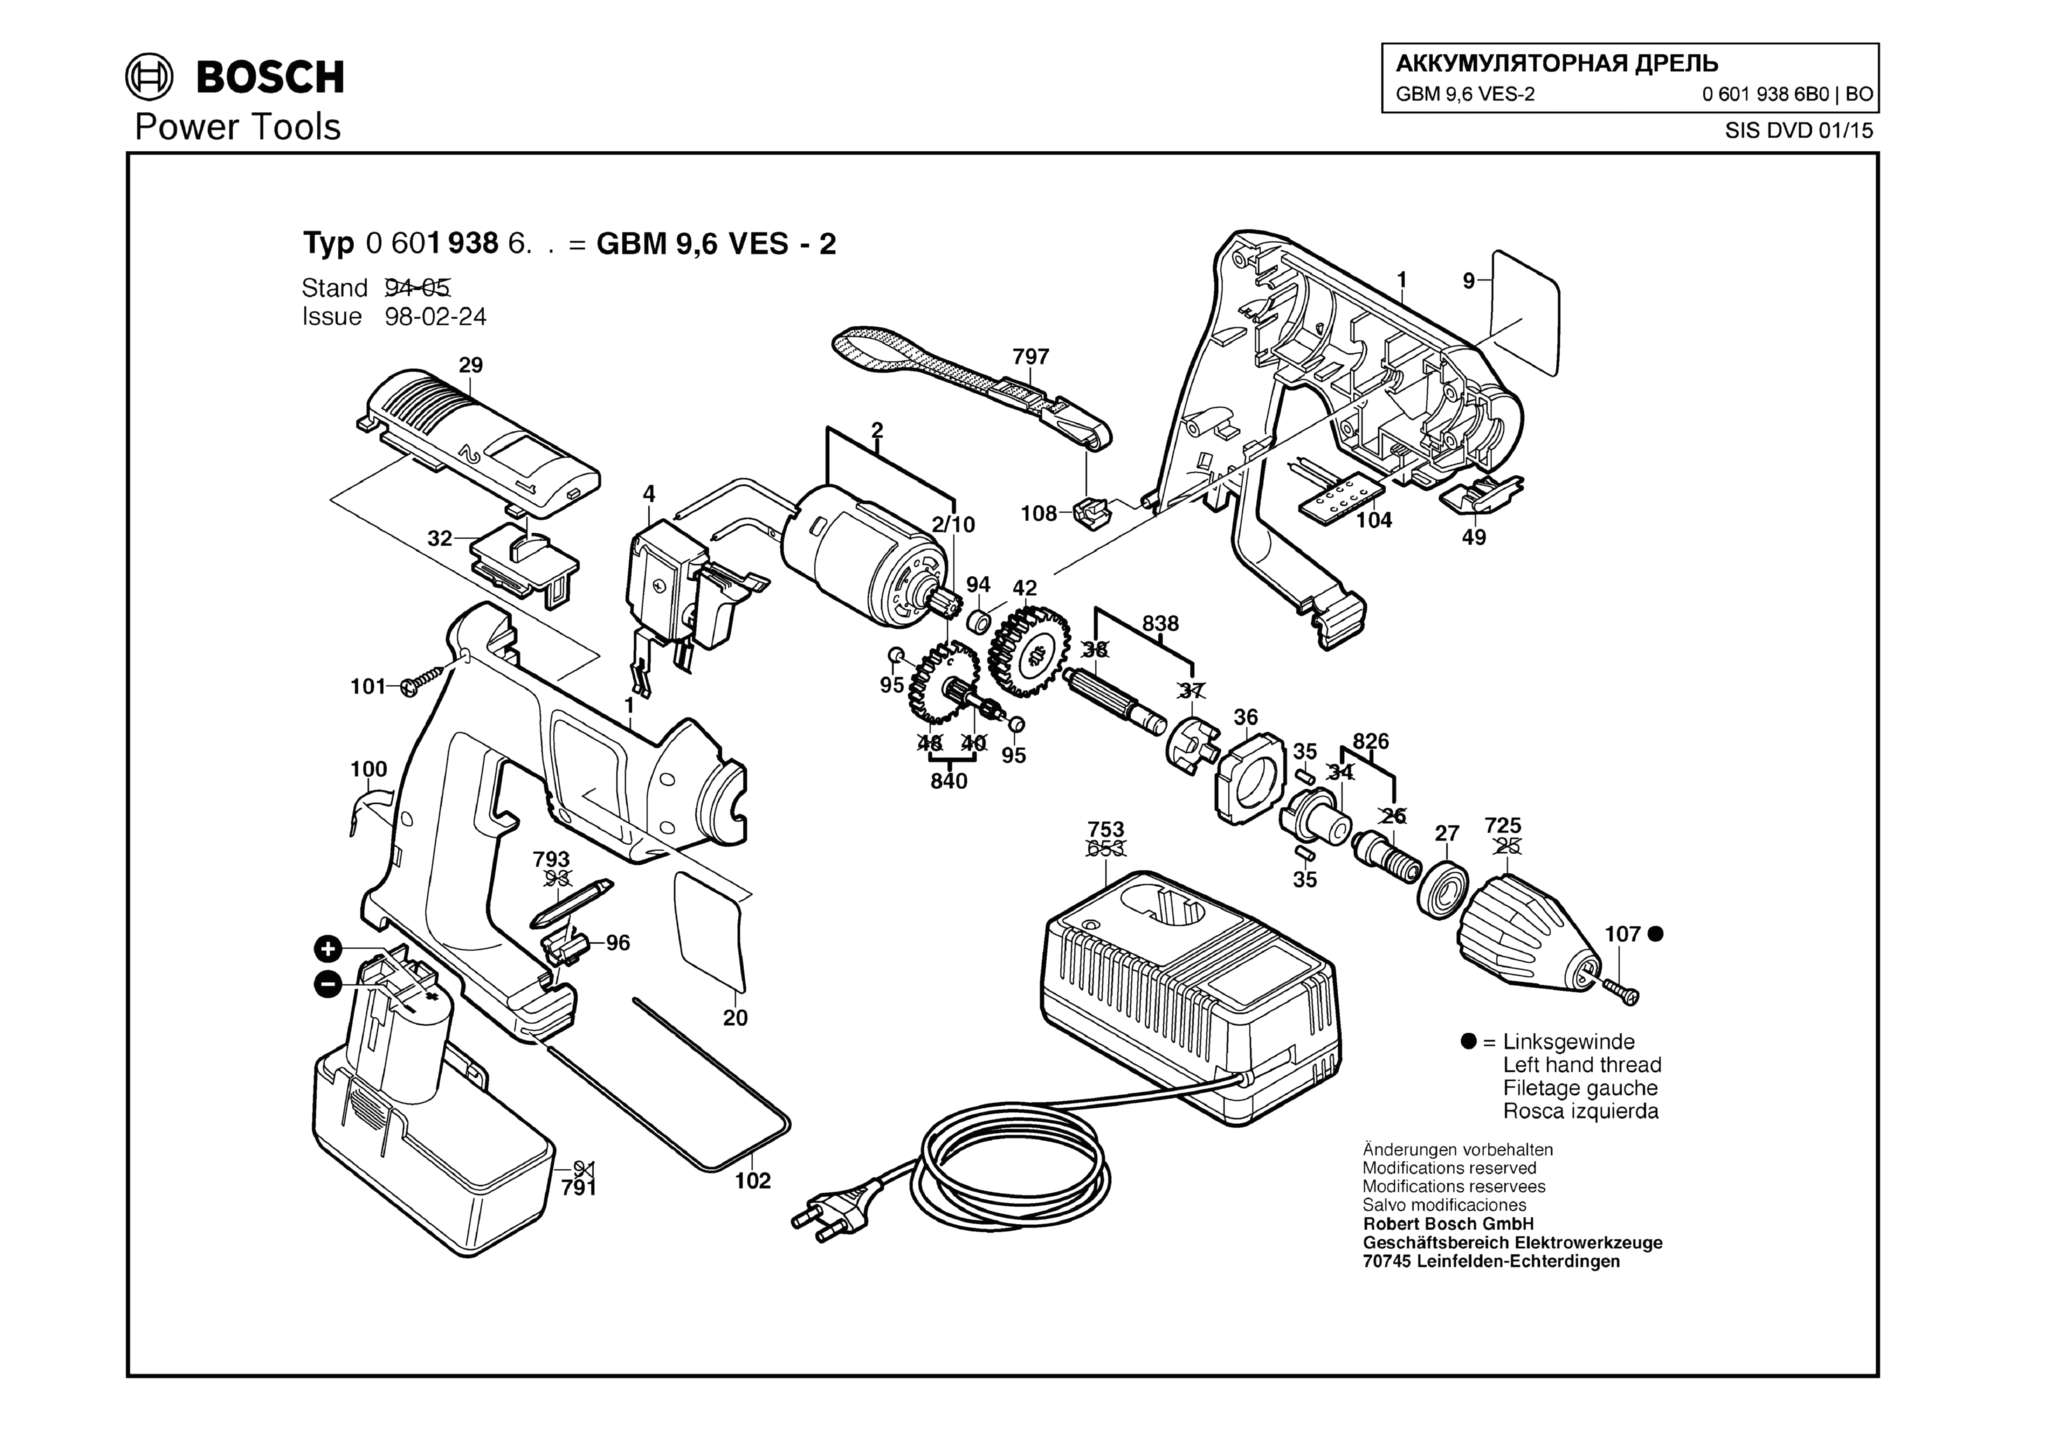 Запчасти, схема и деталировка Bosch GBM 9,6 VES-2 (ТИП 06019386B0)